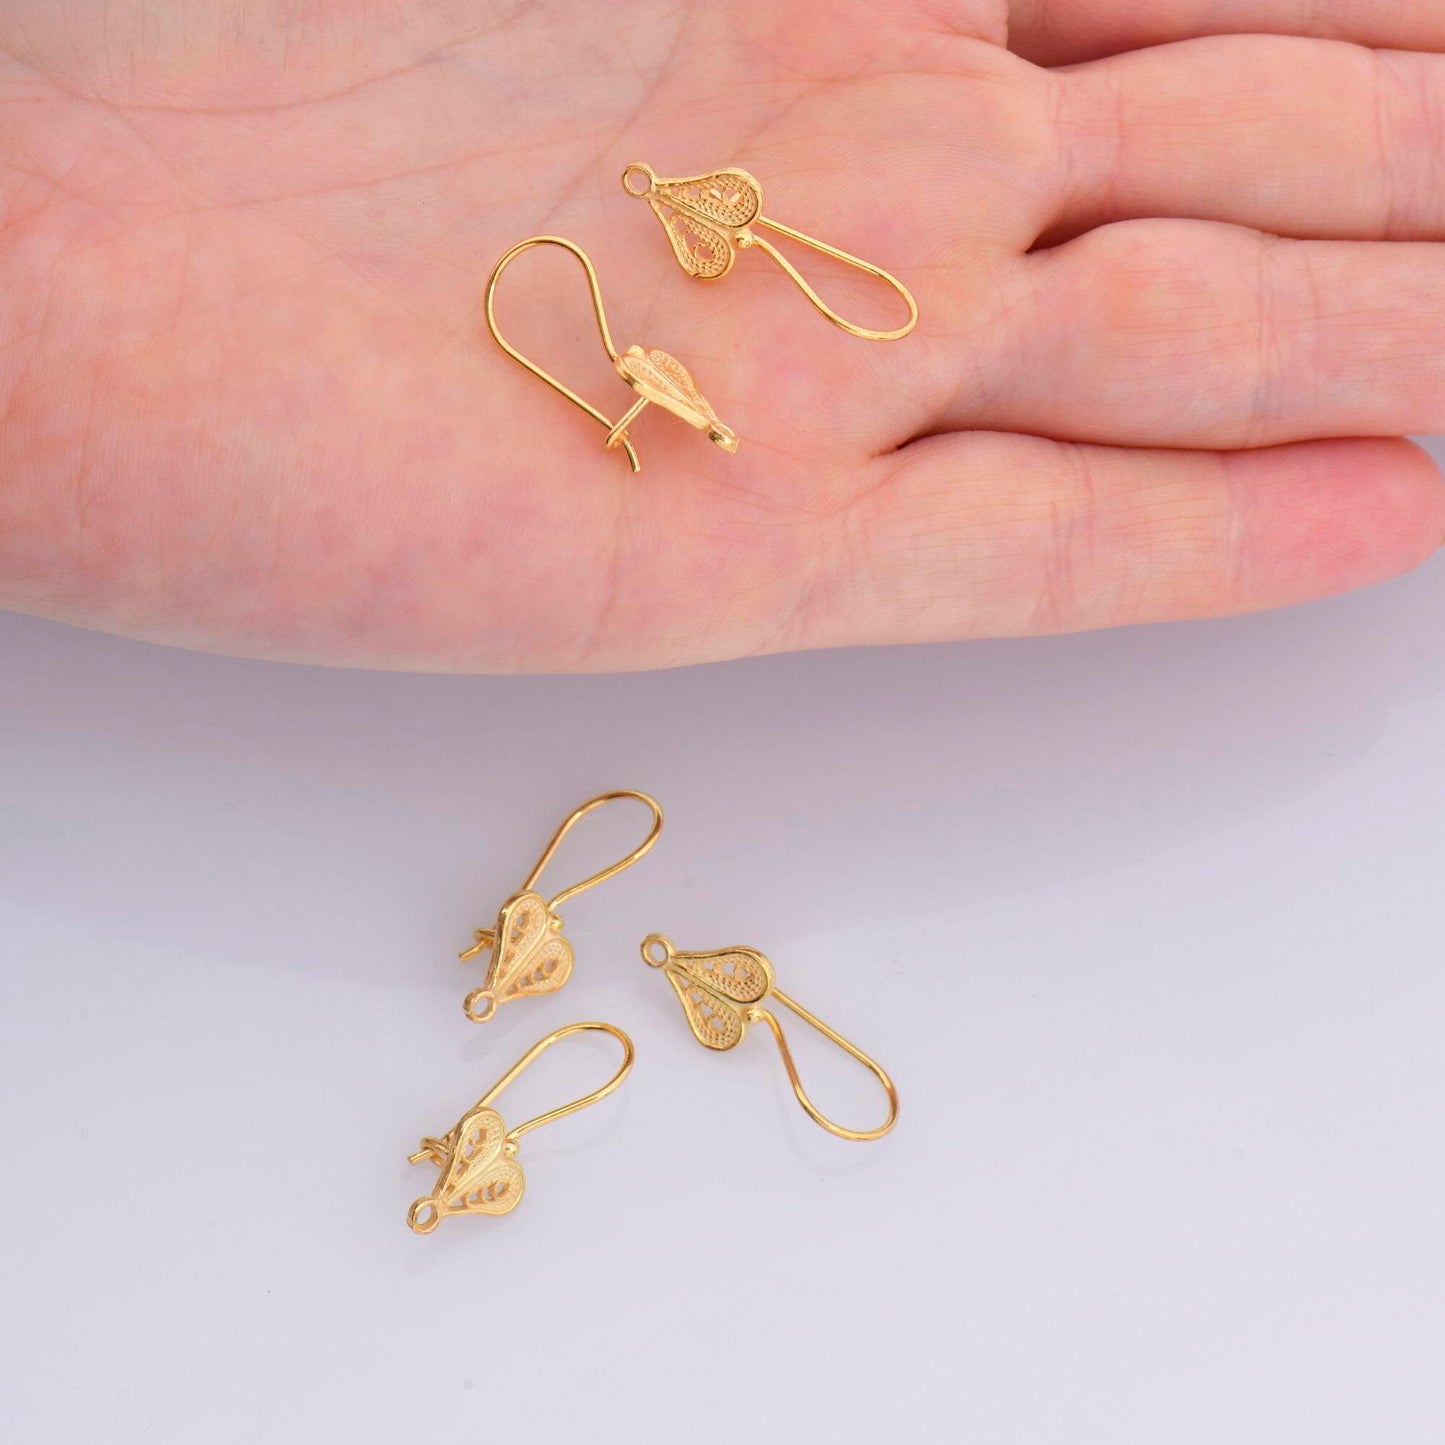 24K Gold Vermeil and 925 Silver  Heart Shape Ear Wires, Earring Hooks, Ear Wires, Earrings Making Supply, Jewelry Findings, M46/VM46